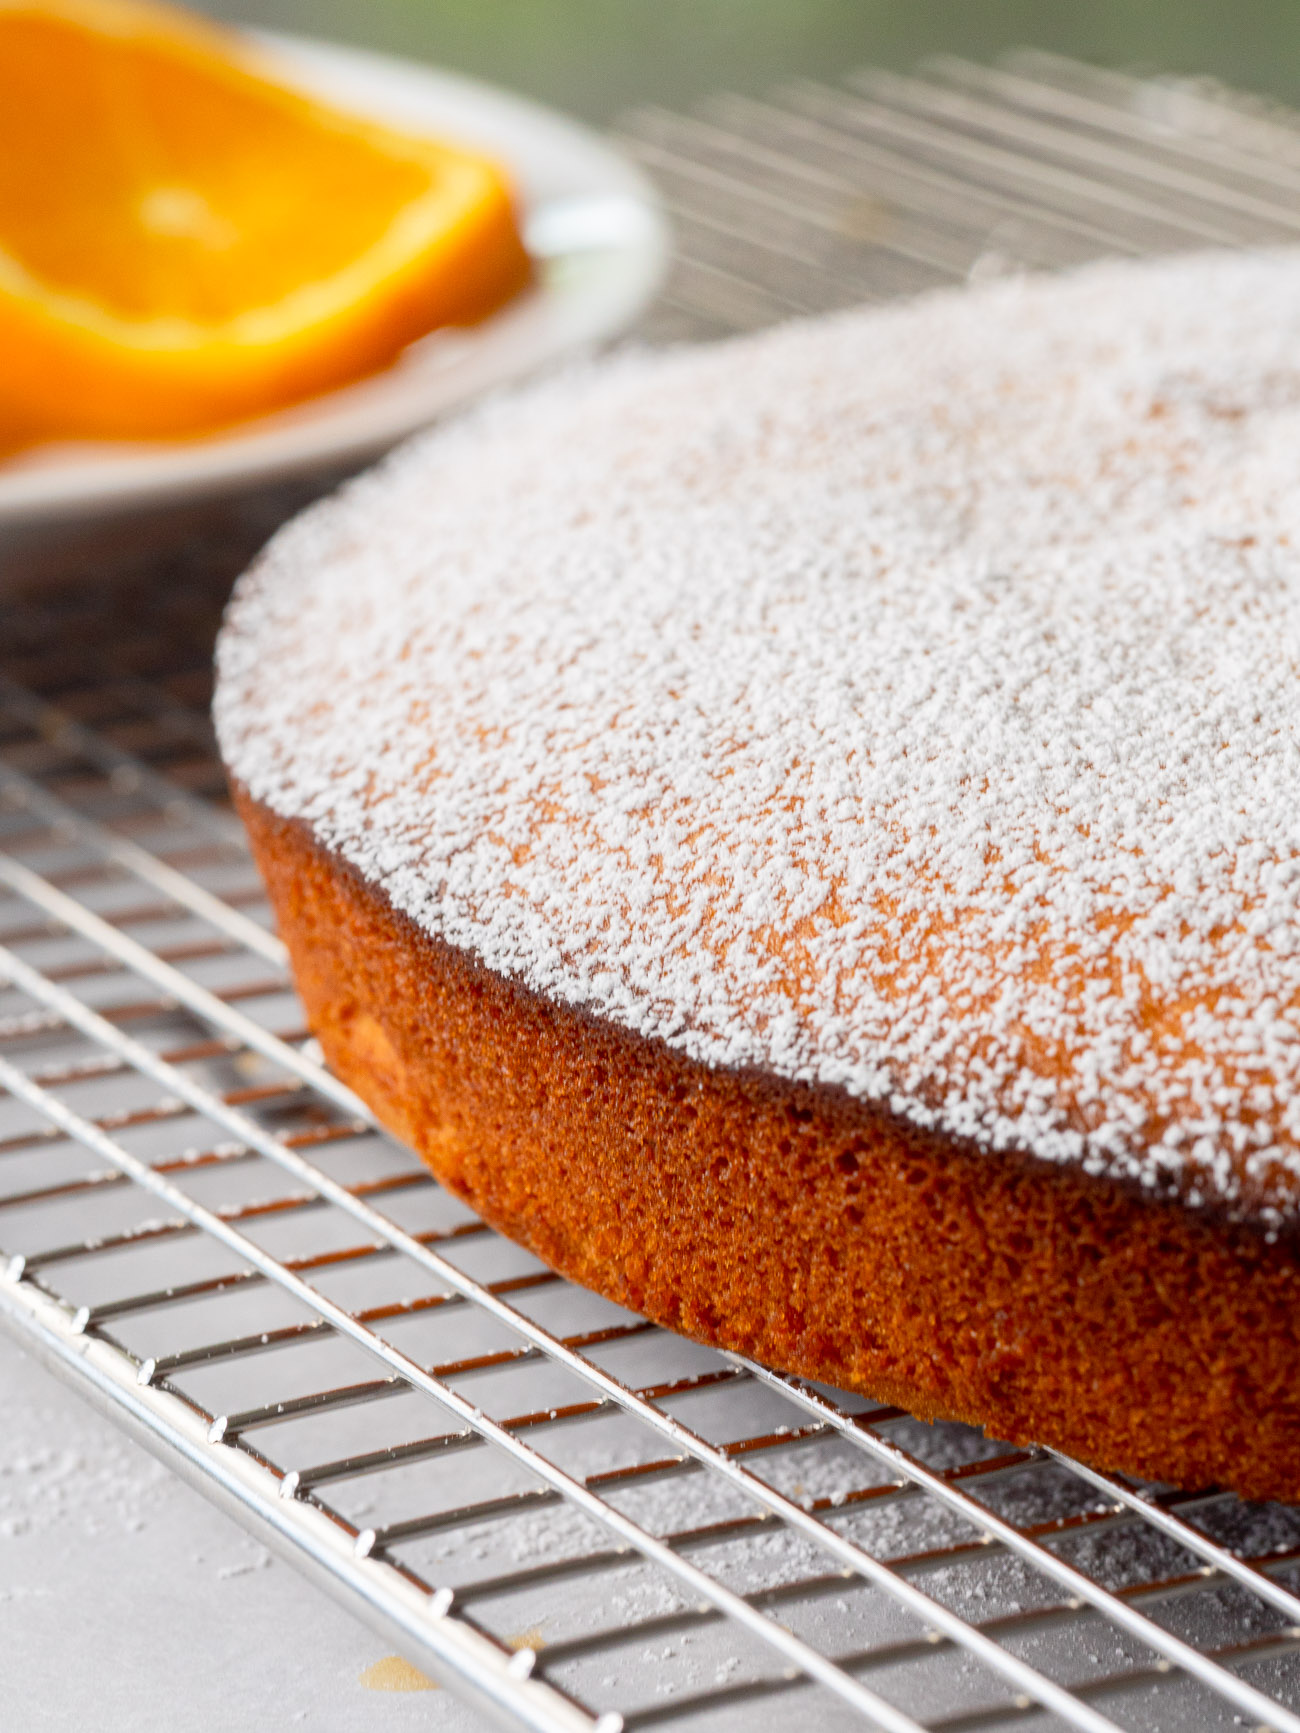 109,700+ Orange Cake Stock Photos, Pictures & Royalty-Free Images - iStock  | Chocolate orange cake, Orange cake slice, Blood orange cake